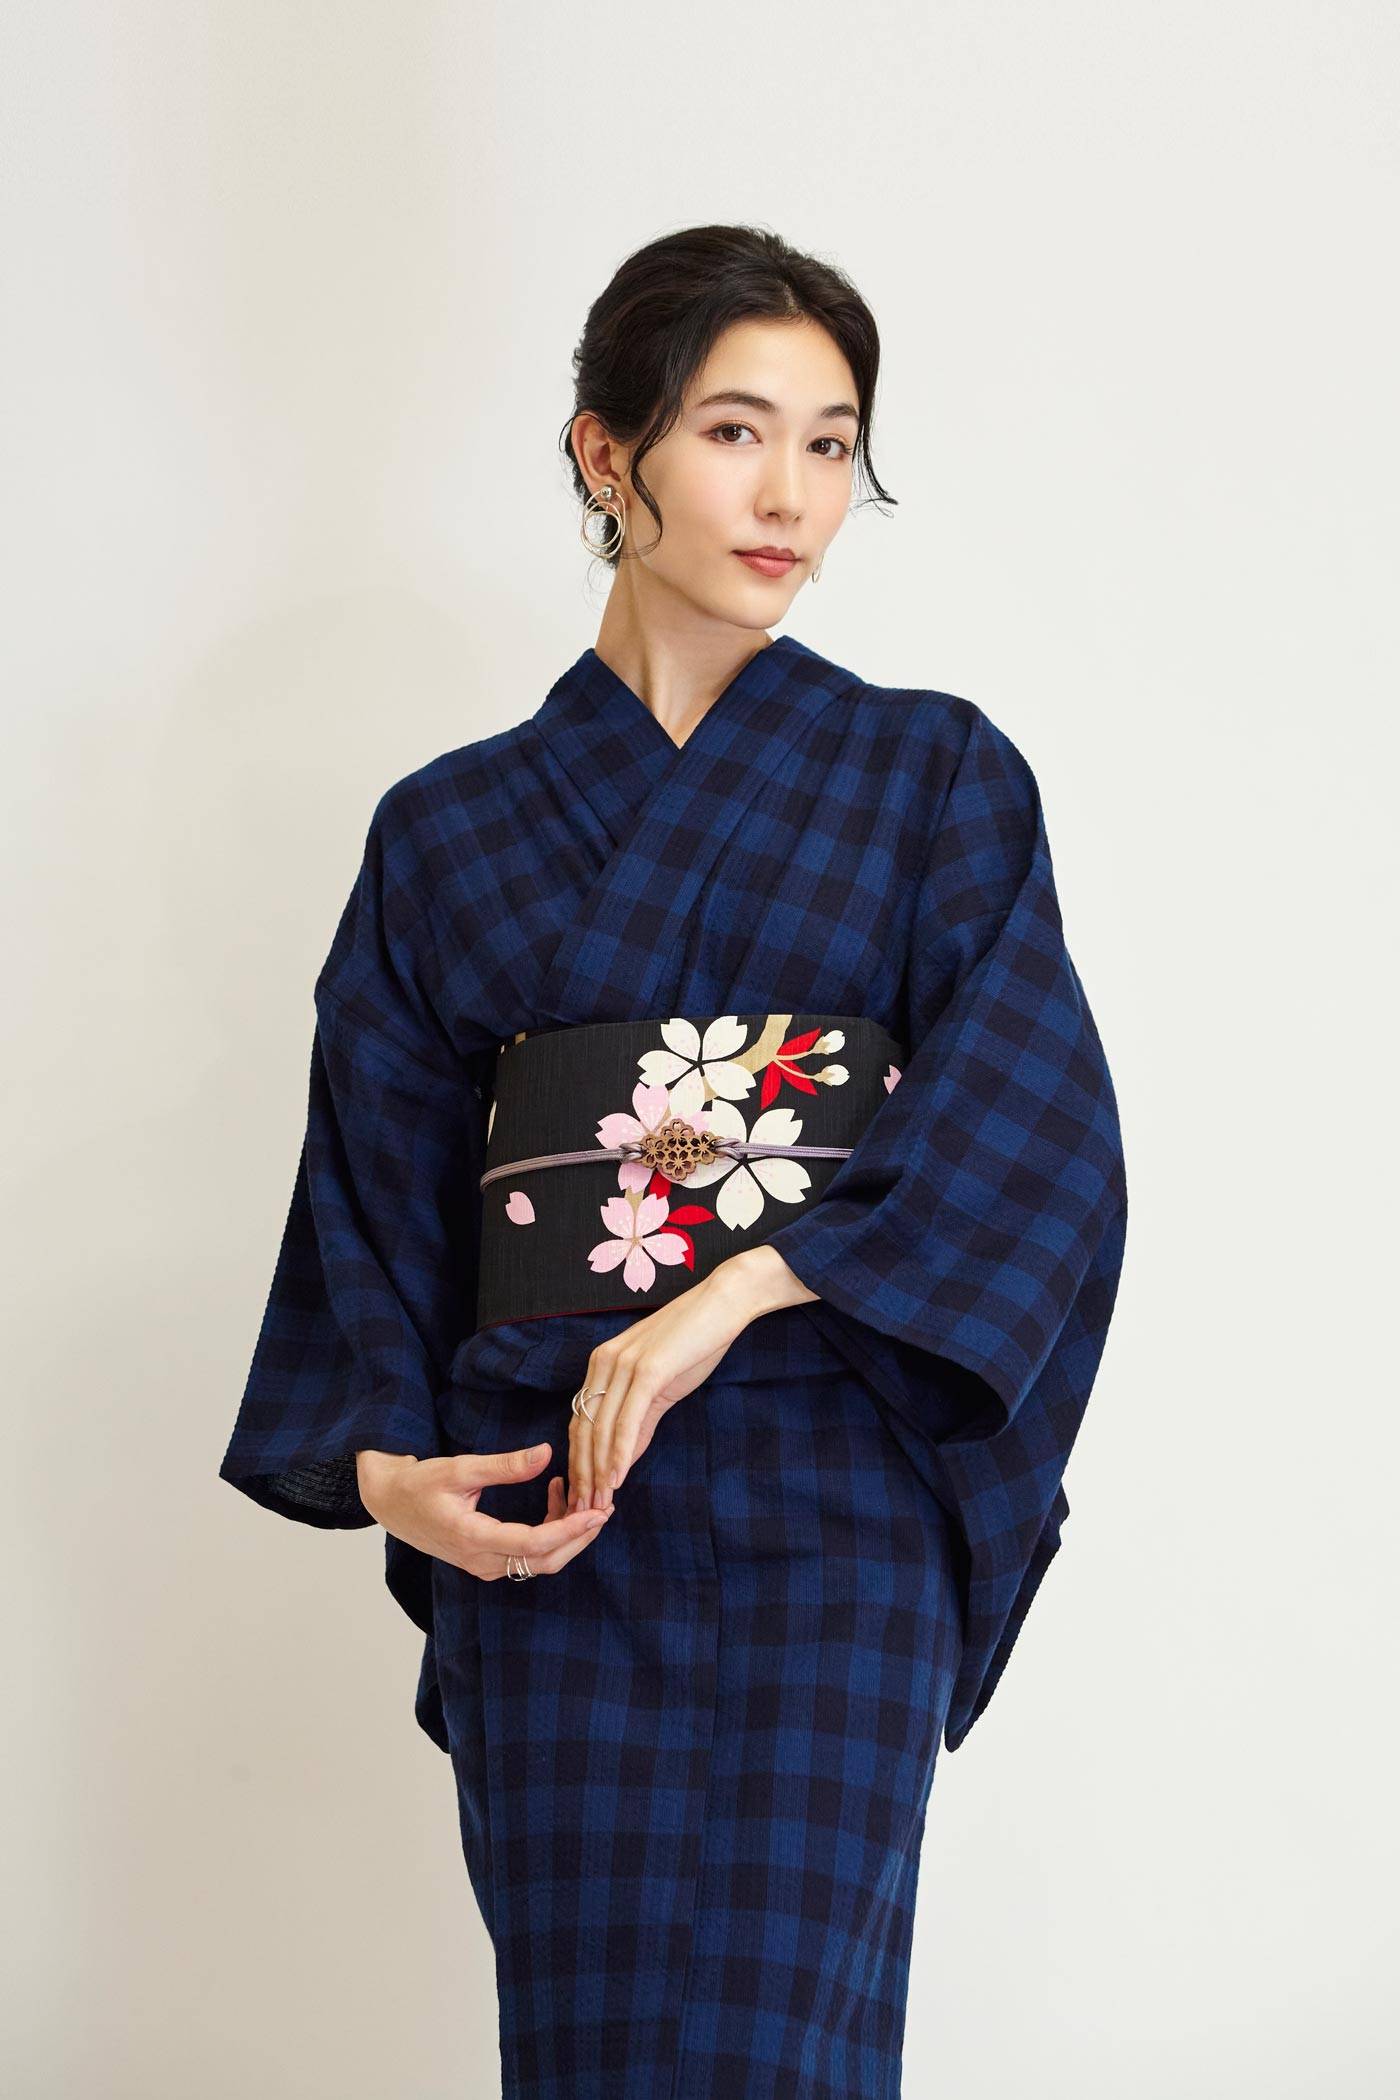 Japanese Kimono With Obi and a Bag -  Israel